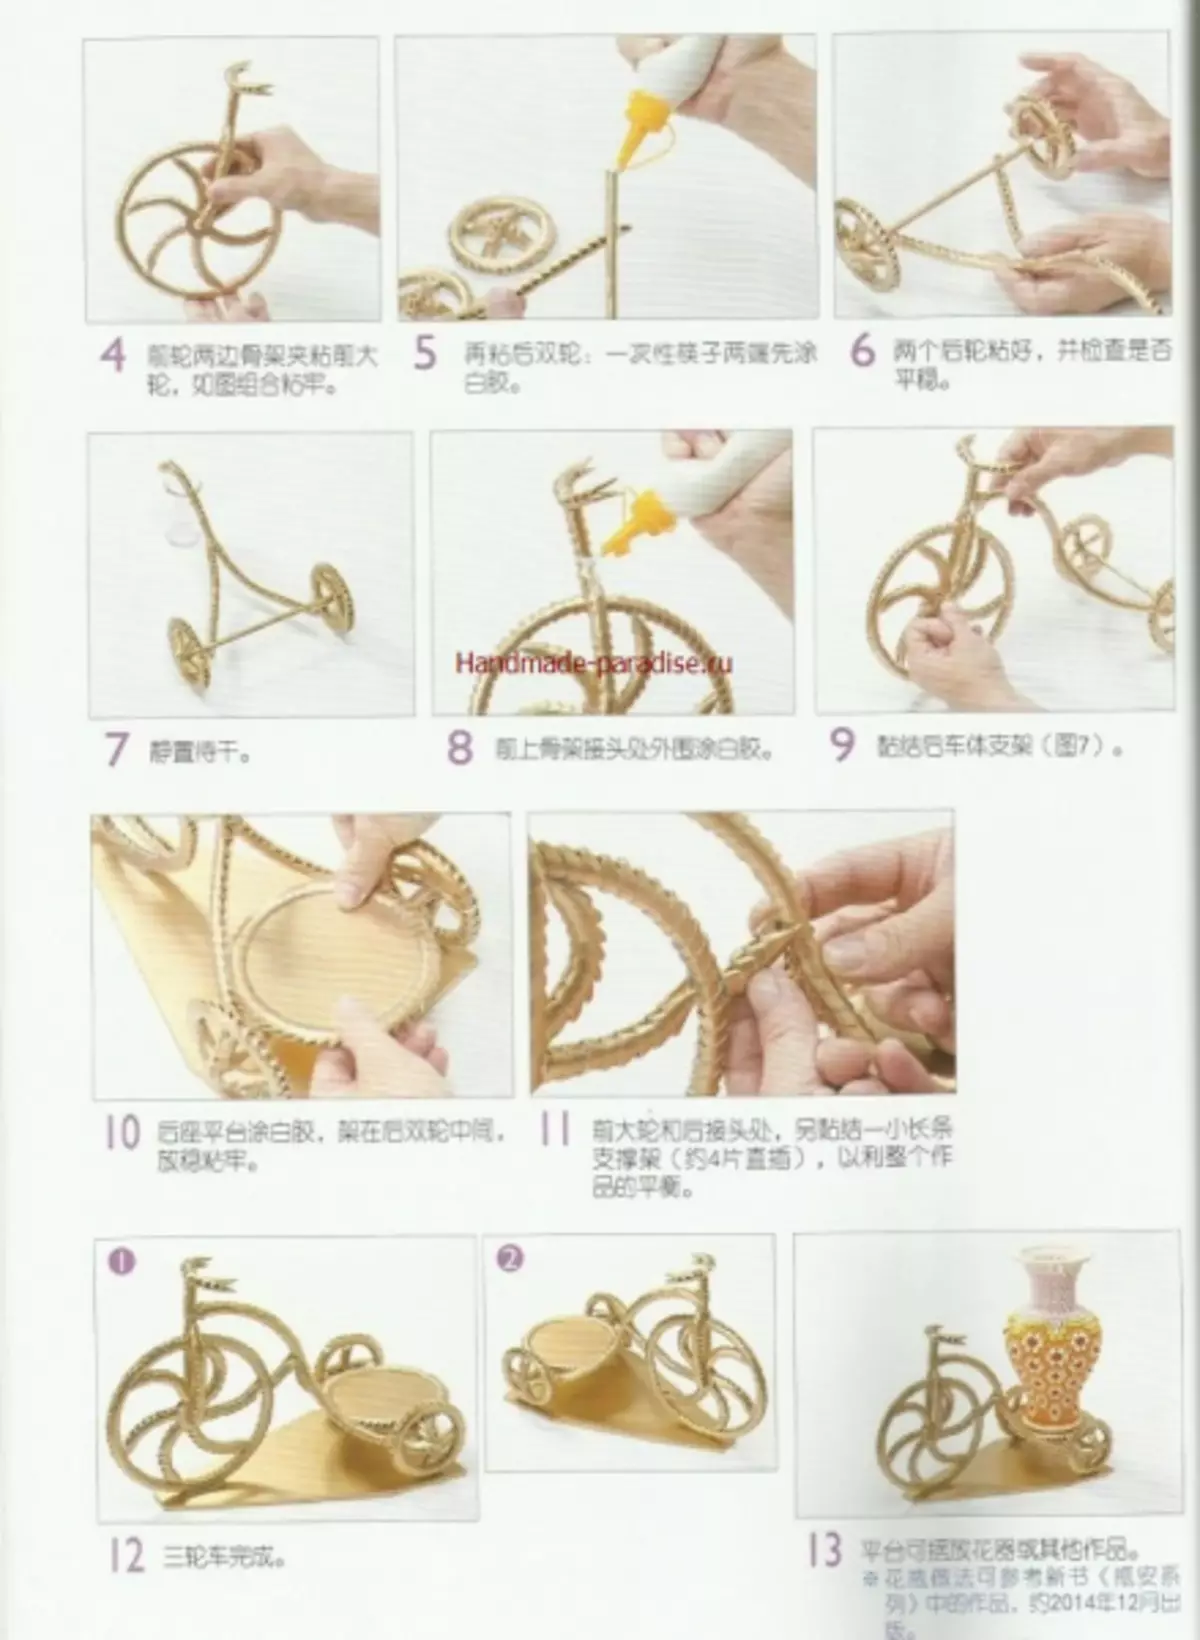 Modulárny origami. Japonský časopis s magisterskými triedami